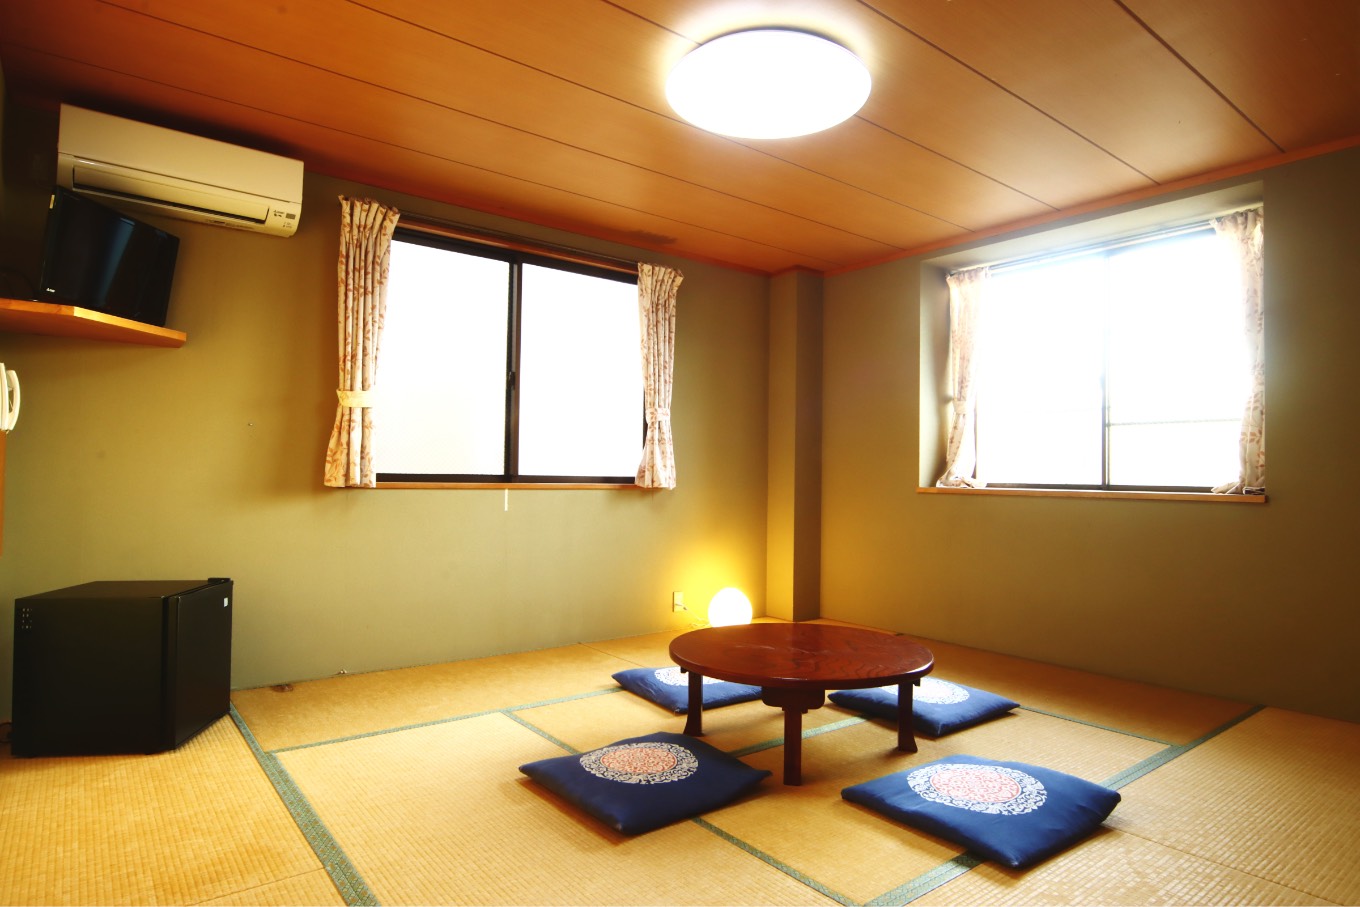 可供4人寬敞使用的5坪日式客房